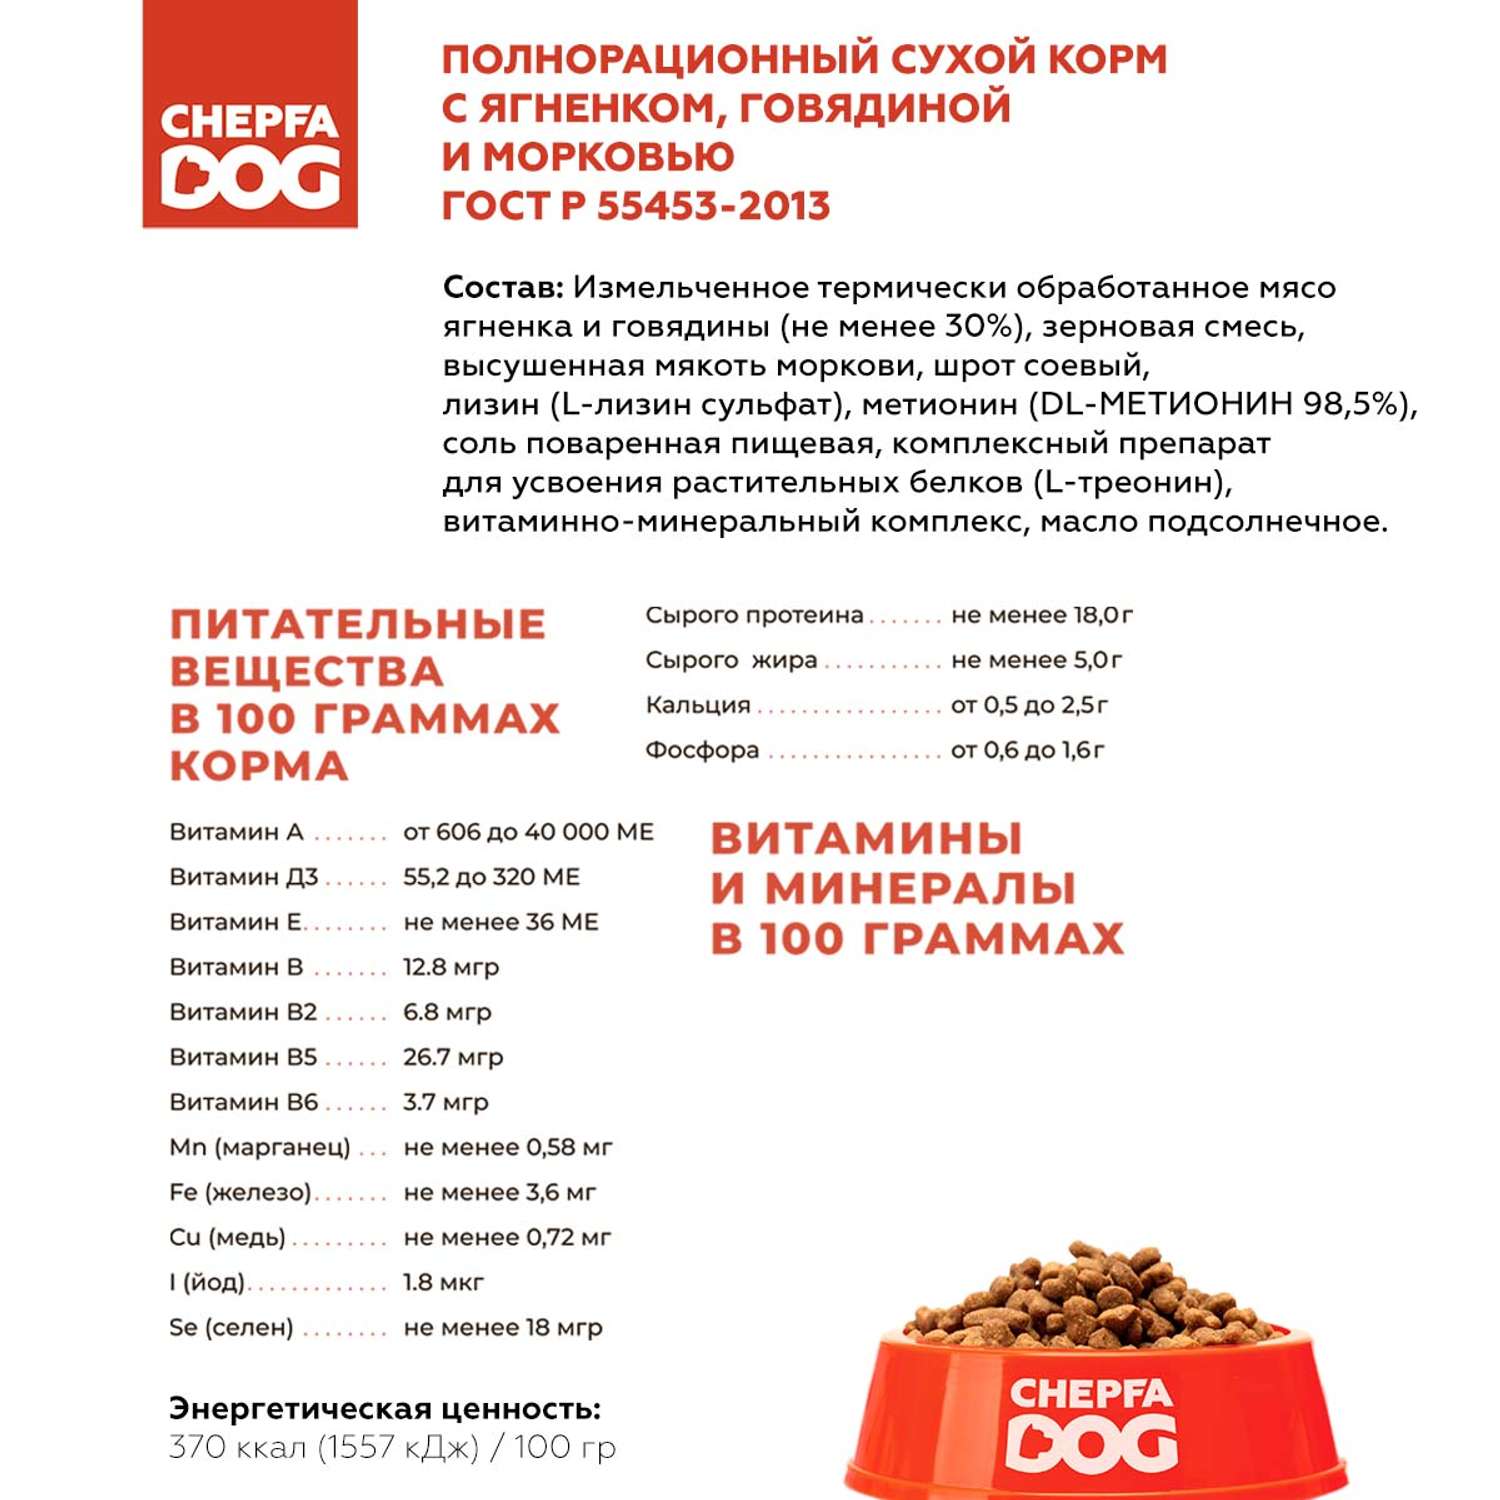 Сухой корм Chepfa Dog полнорационный ягненок и говядина 1.1 кг для взрослых собак средних и крупных пород - фото 4